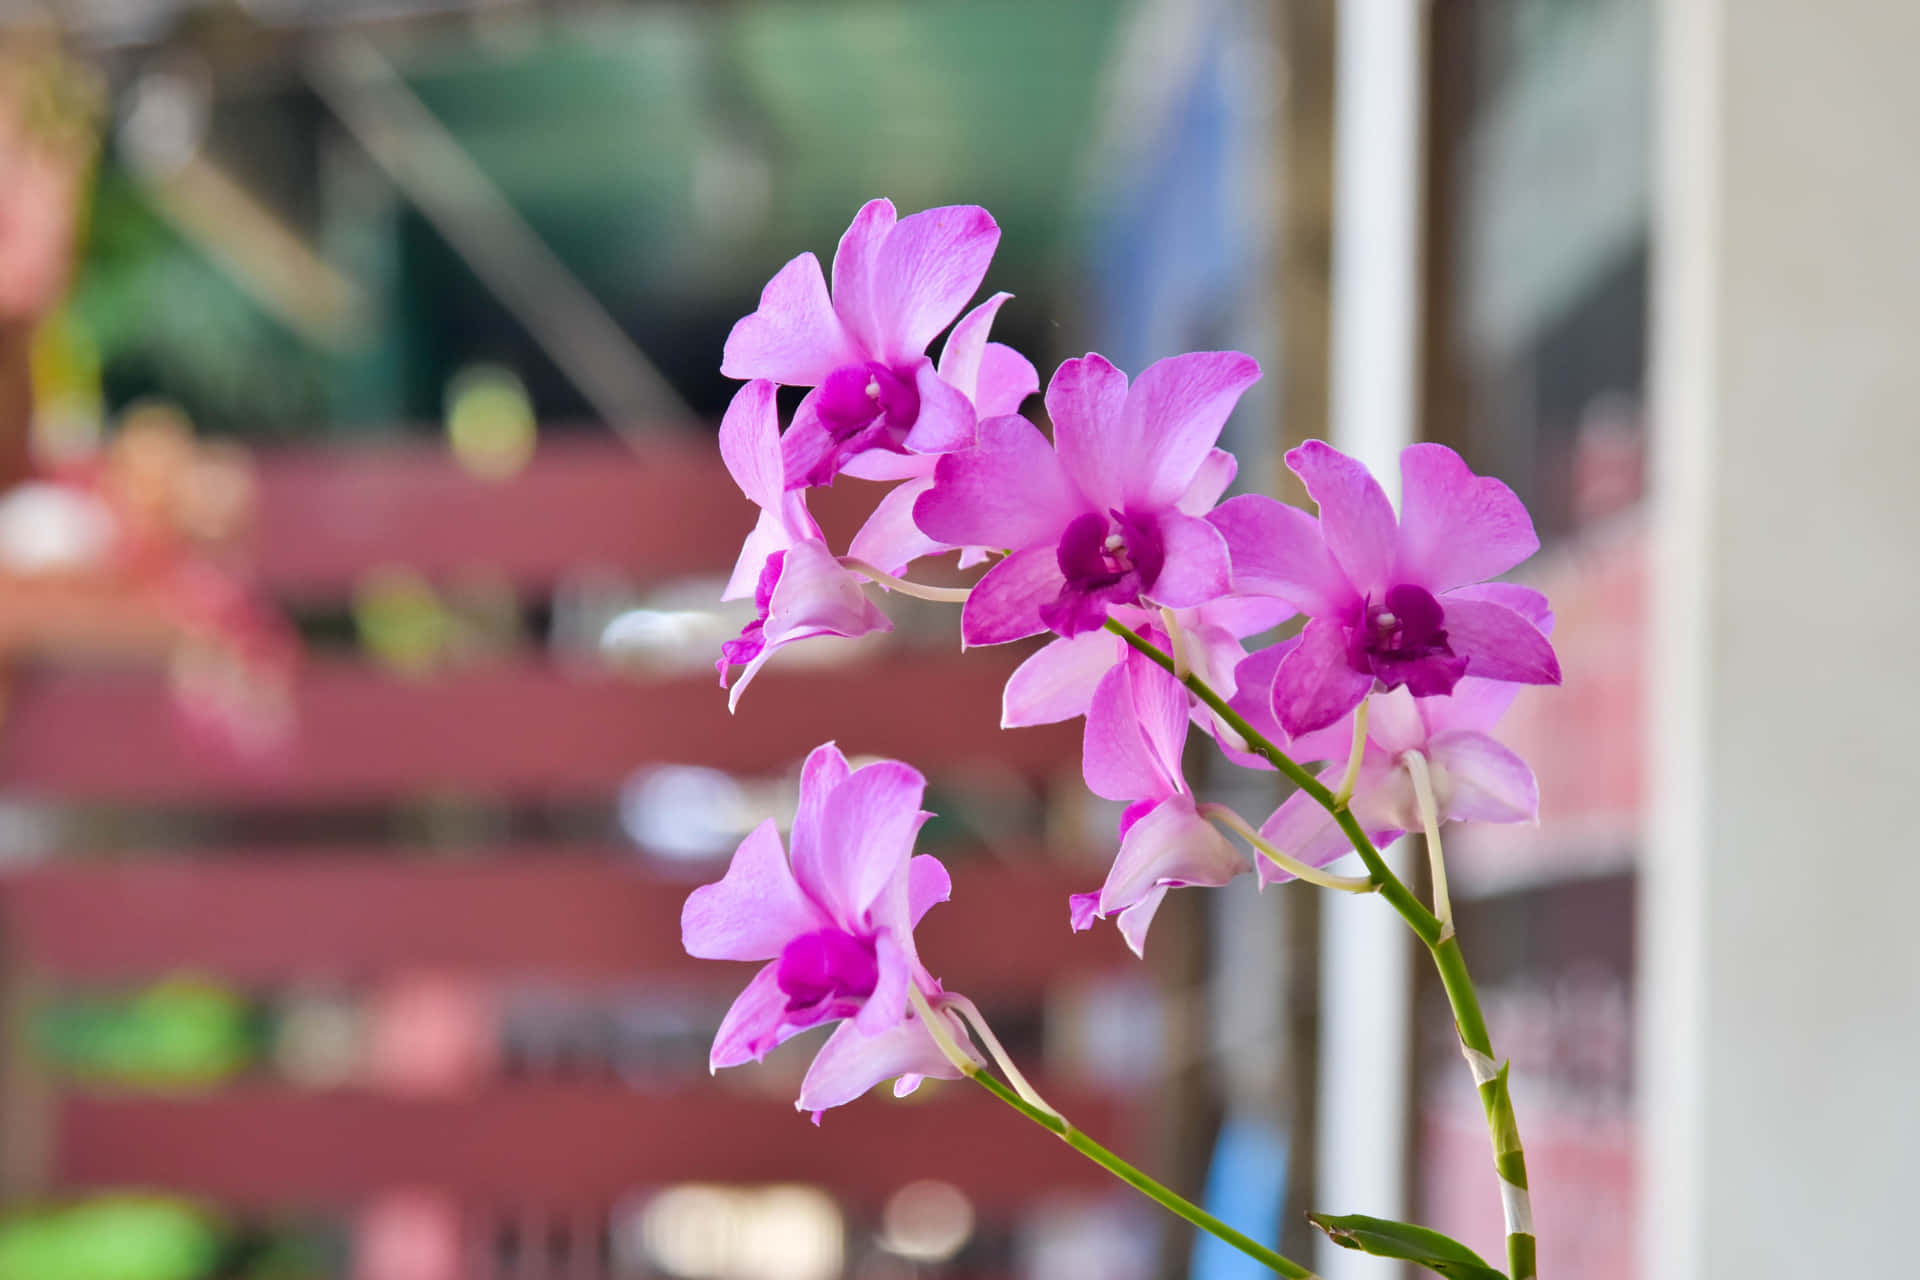 Unavariedad De Coloridas Y Vibrantes Flores De Orquídeas.